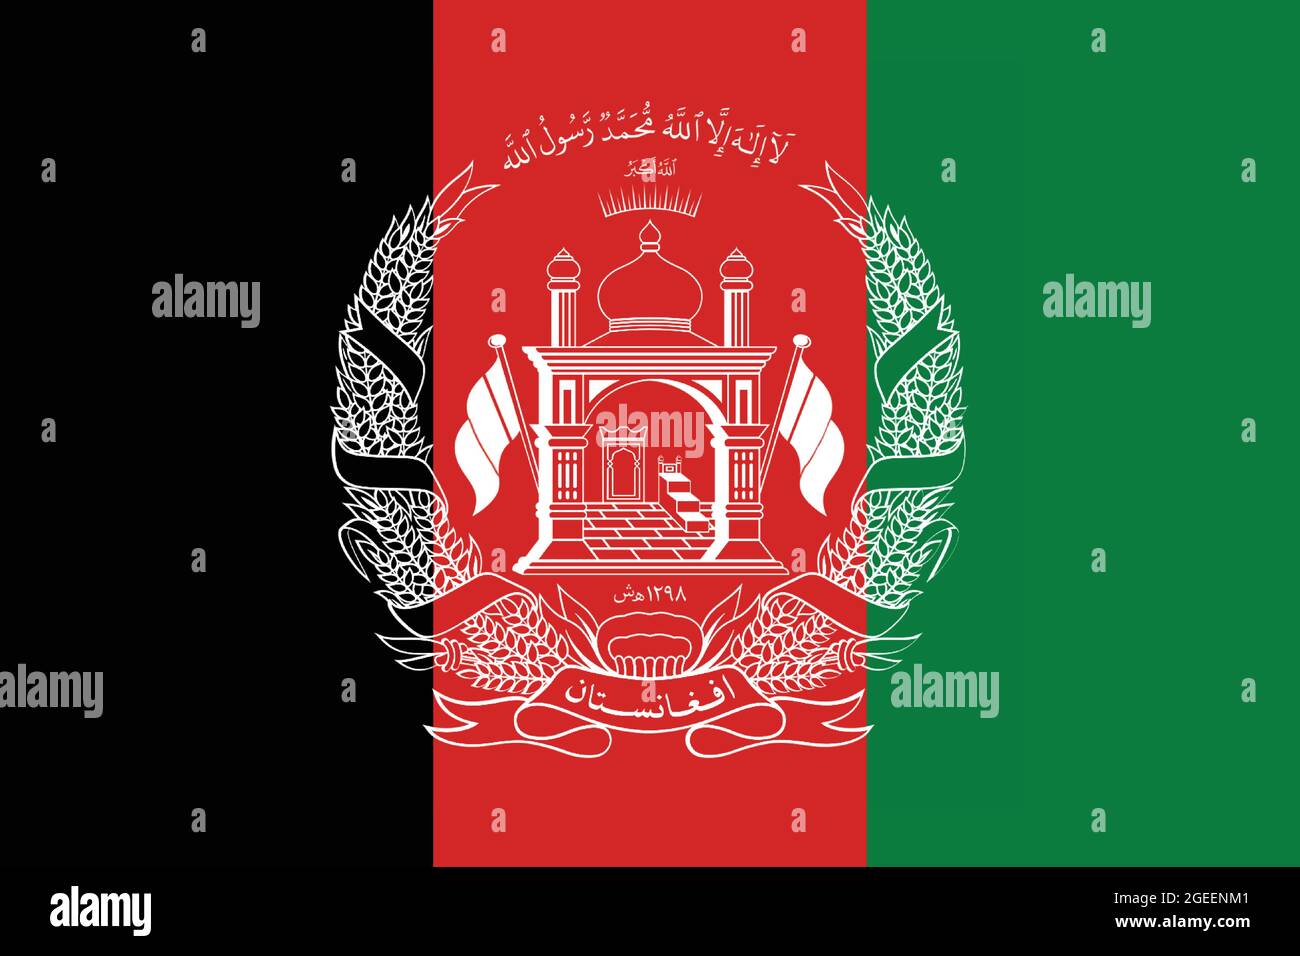 Nationalflagge Afghanistans Originalgröße und Farben Vektorgrafik, Islamische Republik Afghanistan Flagge nationales Emblem Wappen Stock Vektor